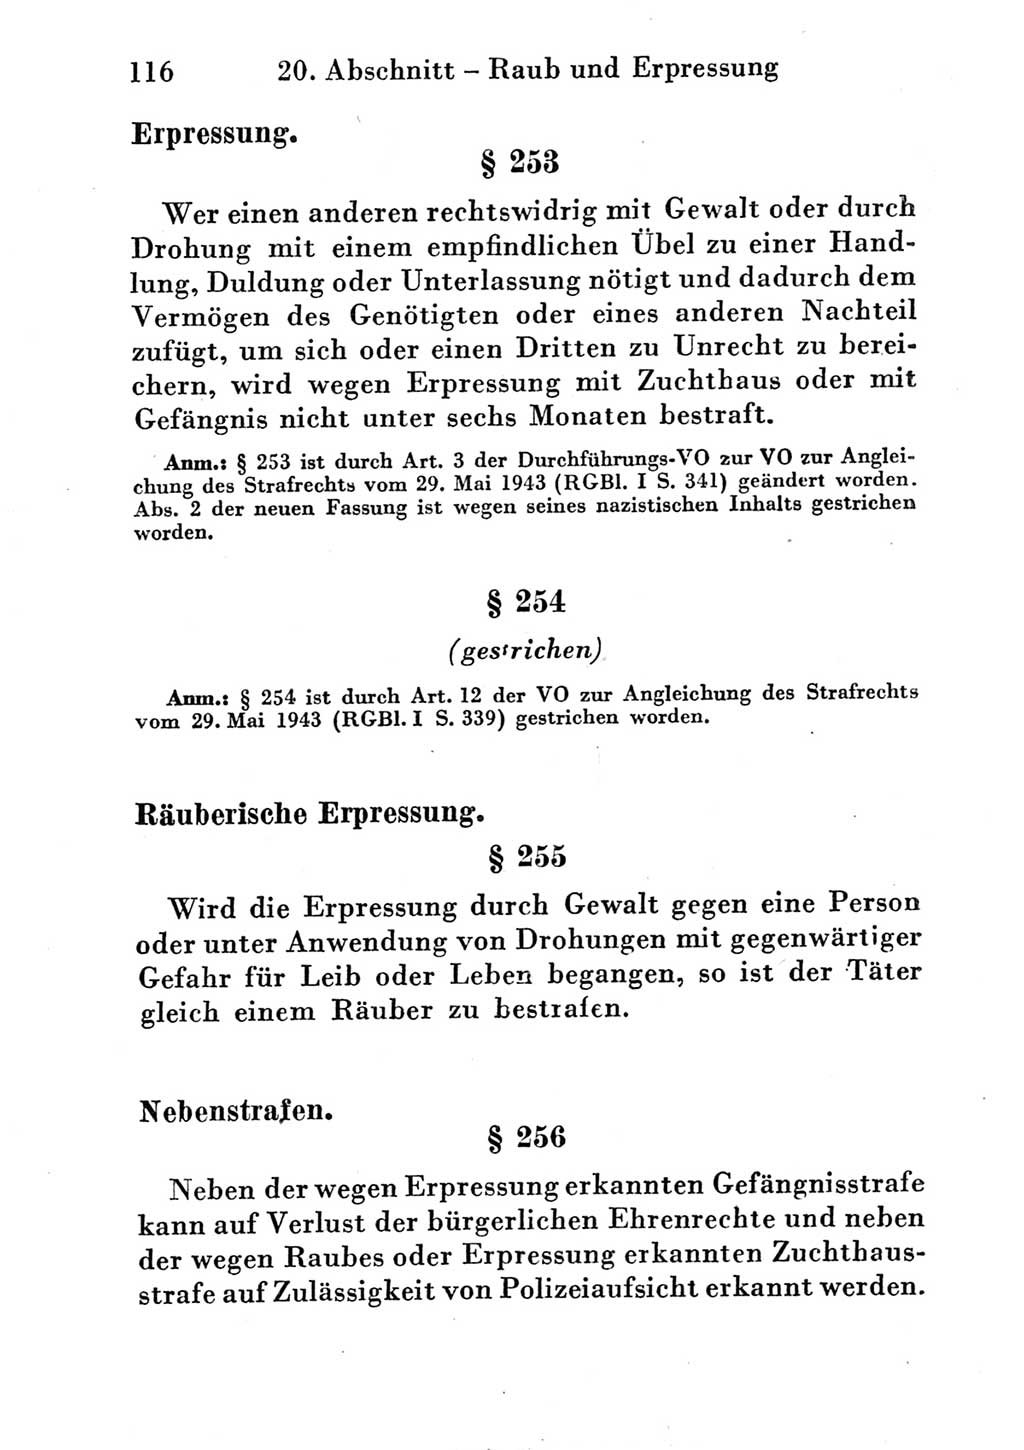 Strafgesetzbuch (StGB) und andere Strafgesetze [Deutsche Demokratische Republik (DDR)] 1951, Seite 116 (StGB Strafges. DDR 1951, S. 116)